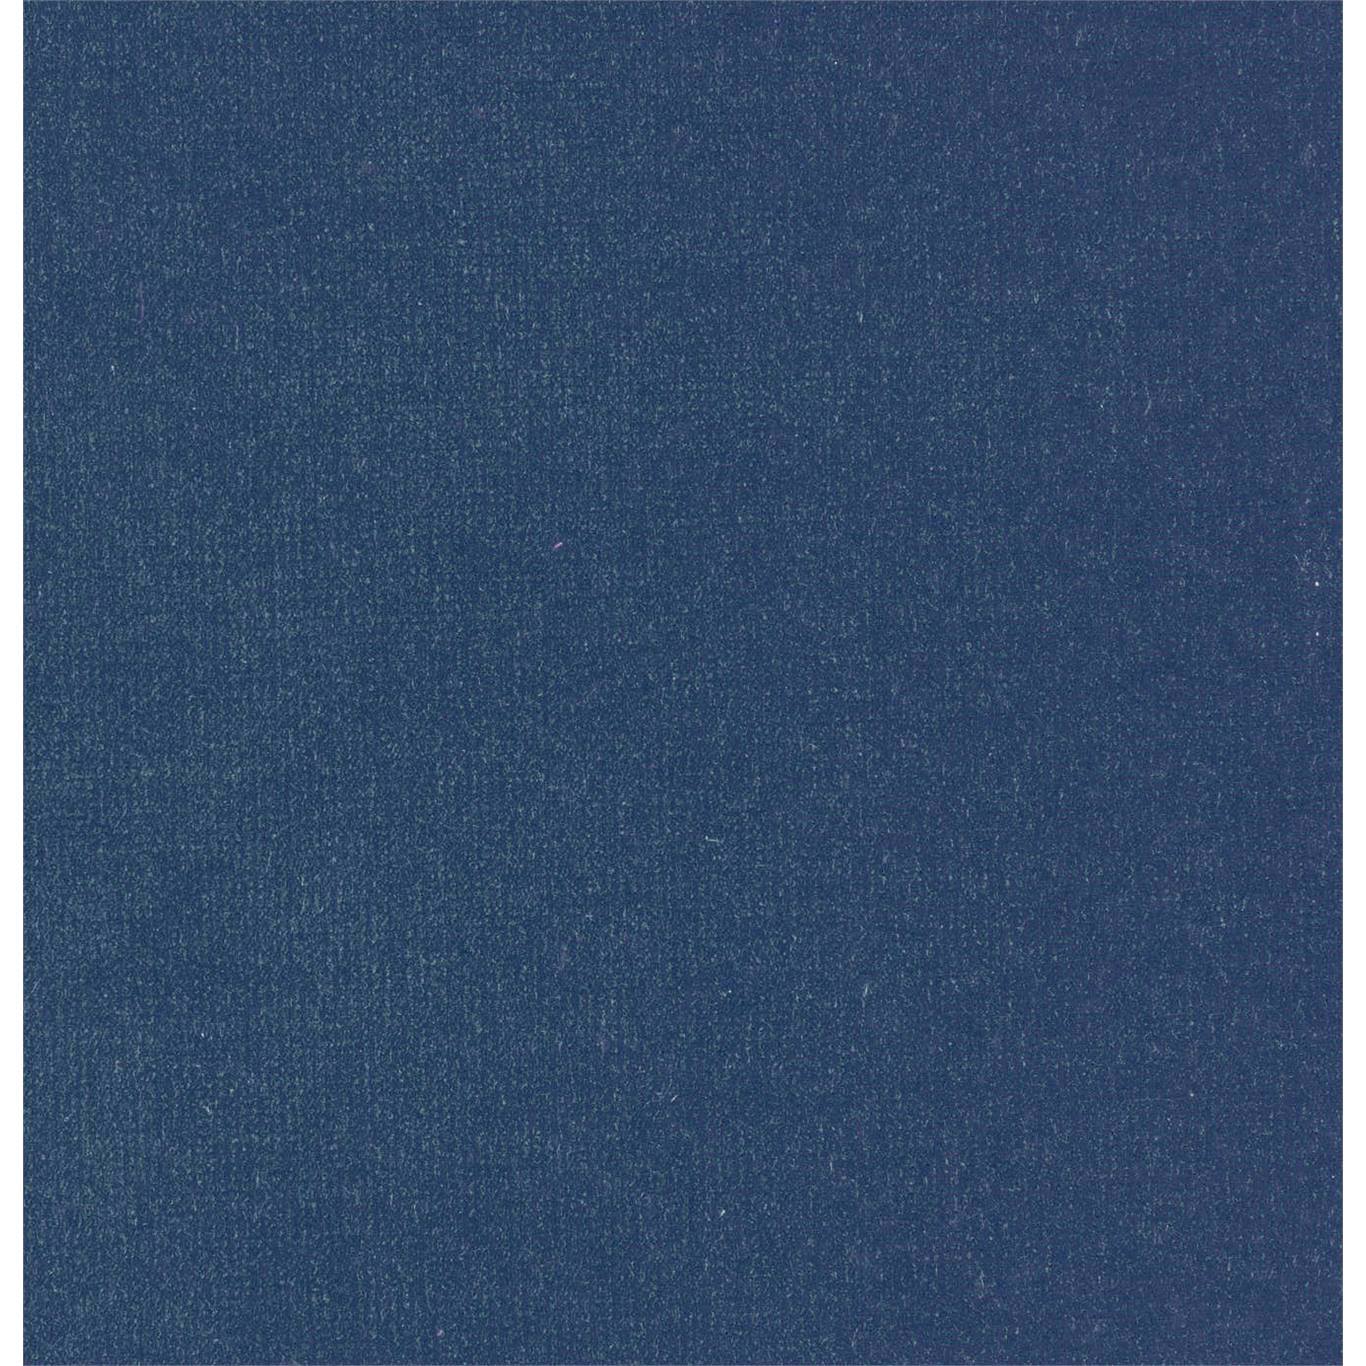 Plush Velvet Blueberry Fabric by HAR